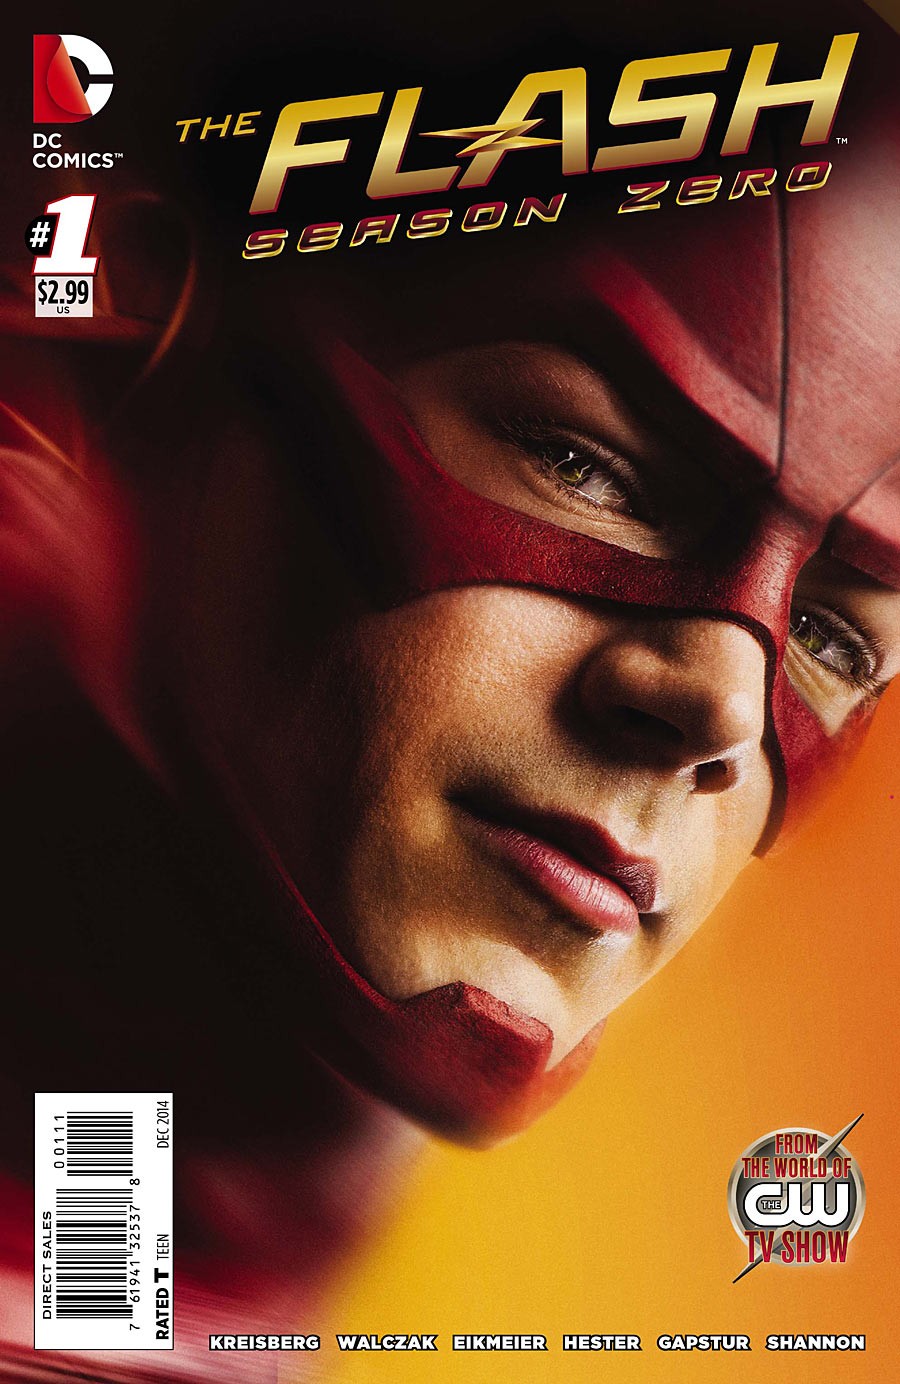 The Flash: Season Zero Vol. 1 #1